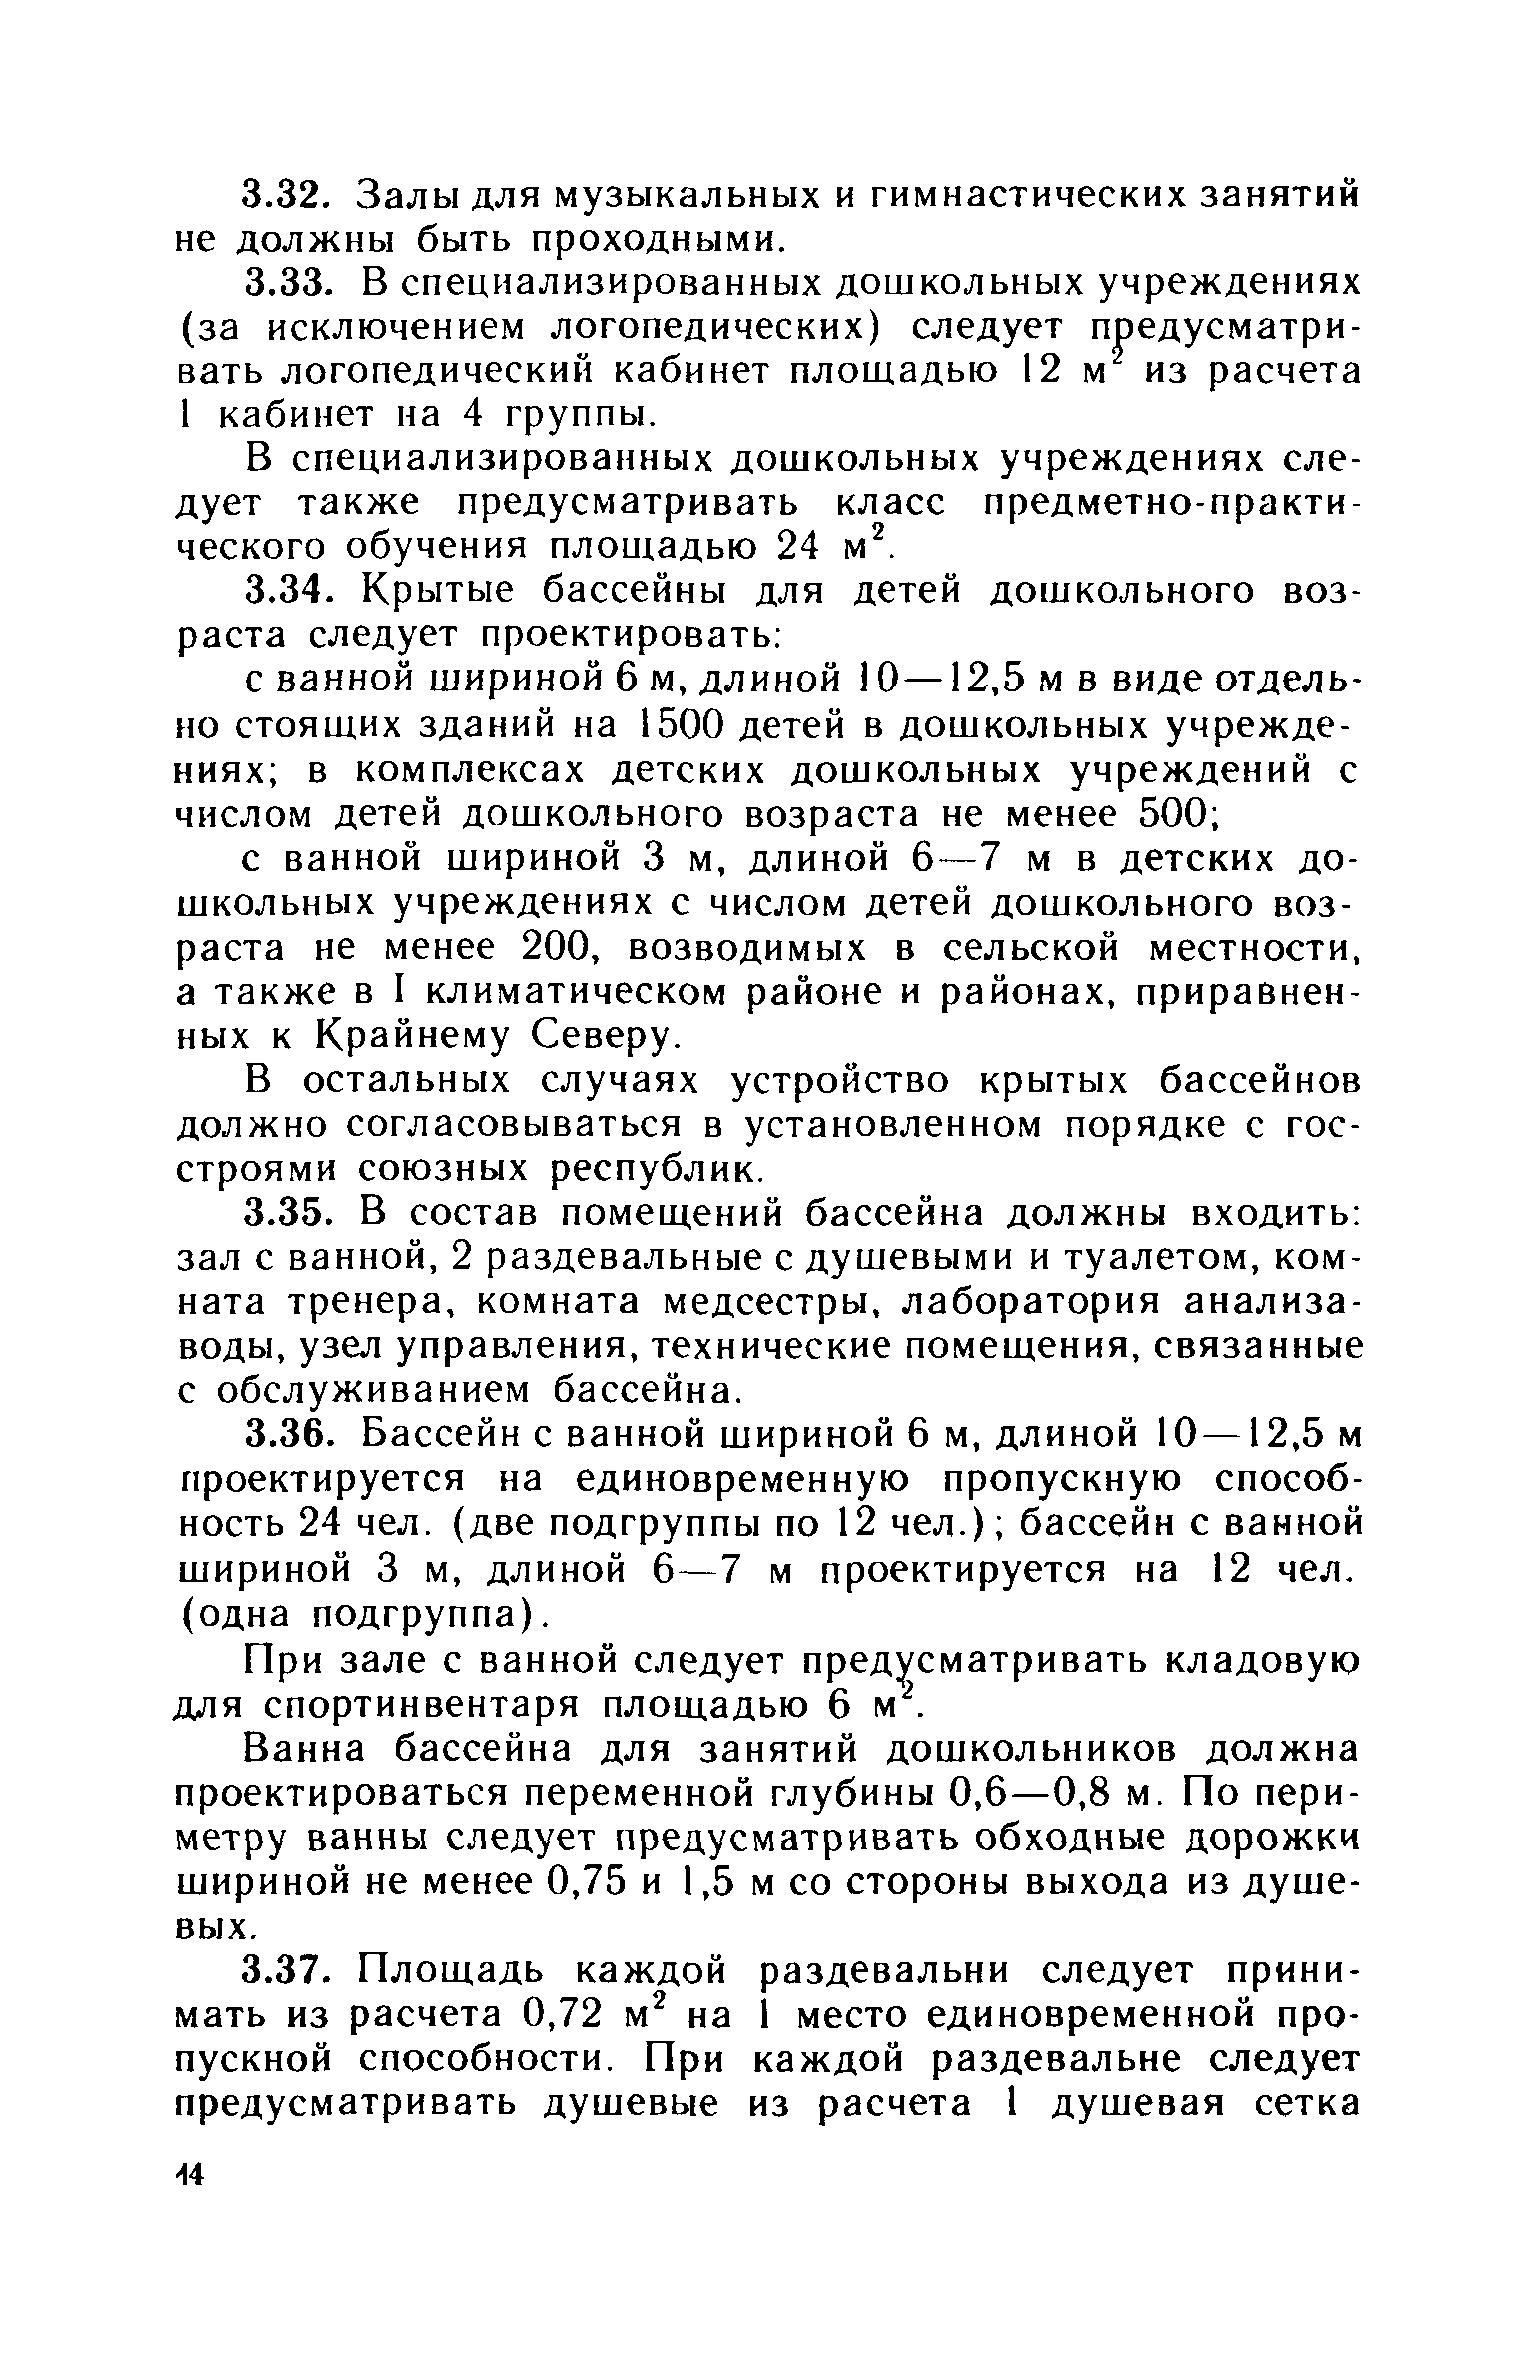 ВСН 49-86/Госгражданстрой